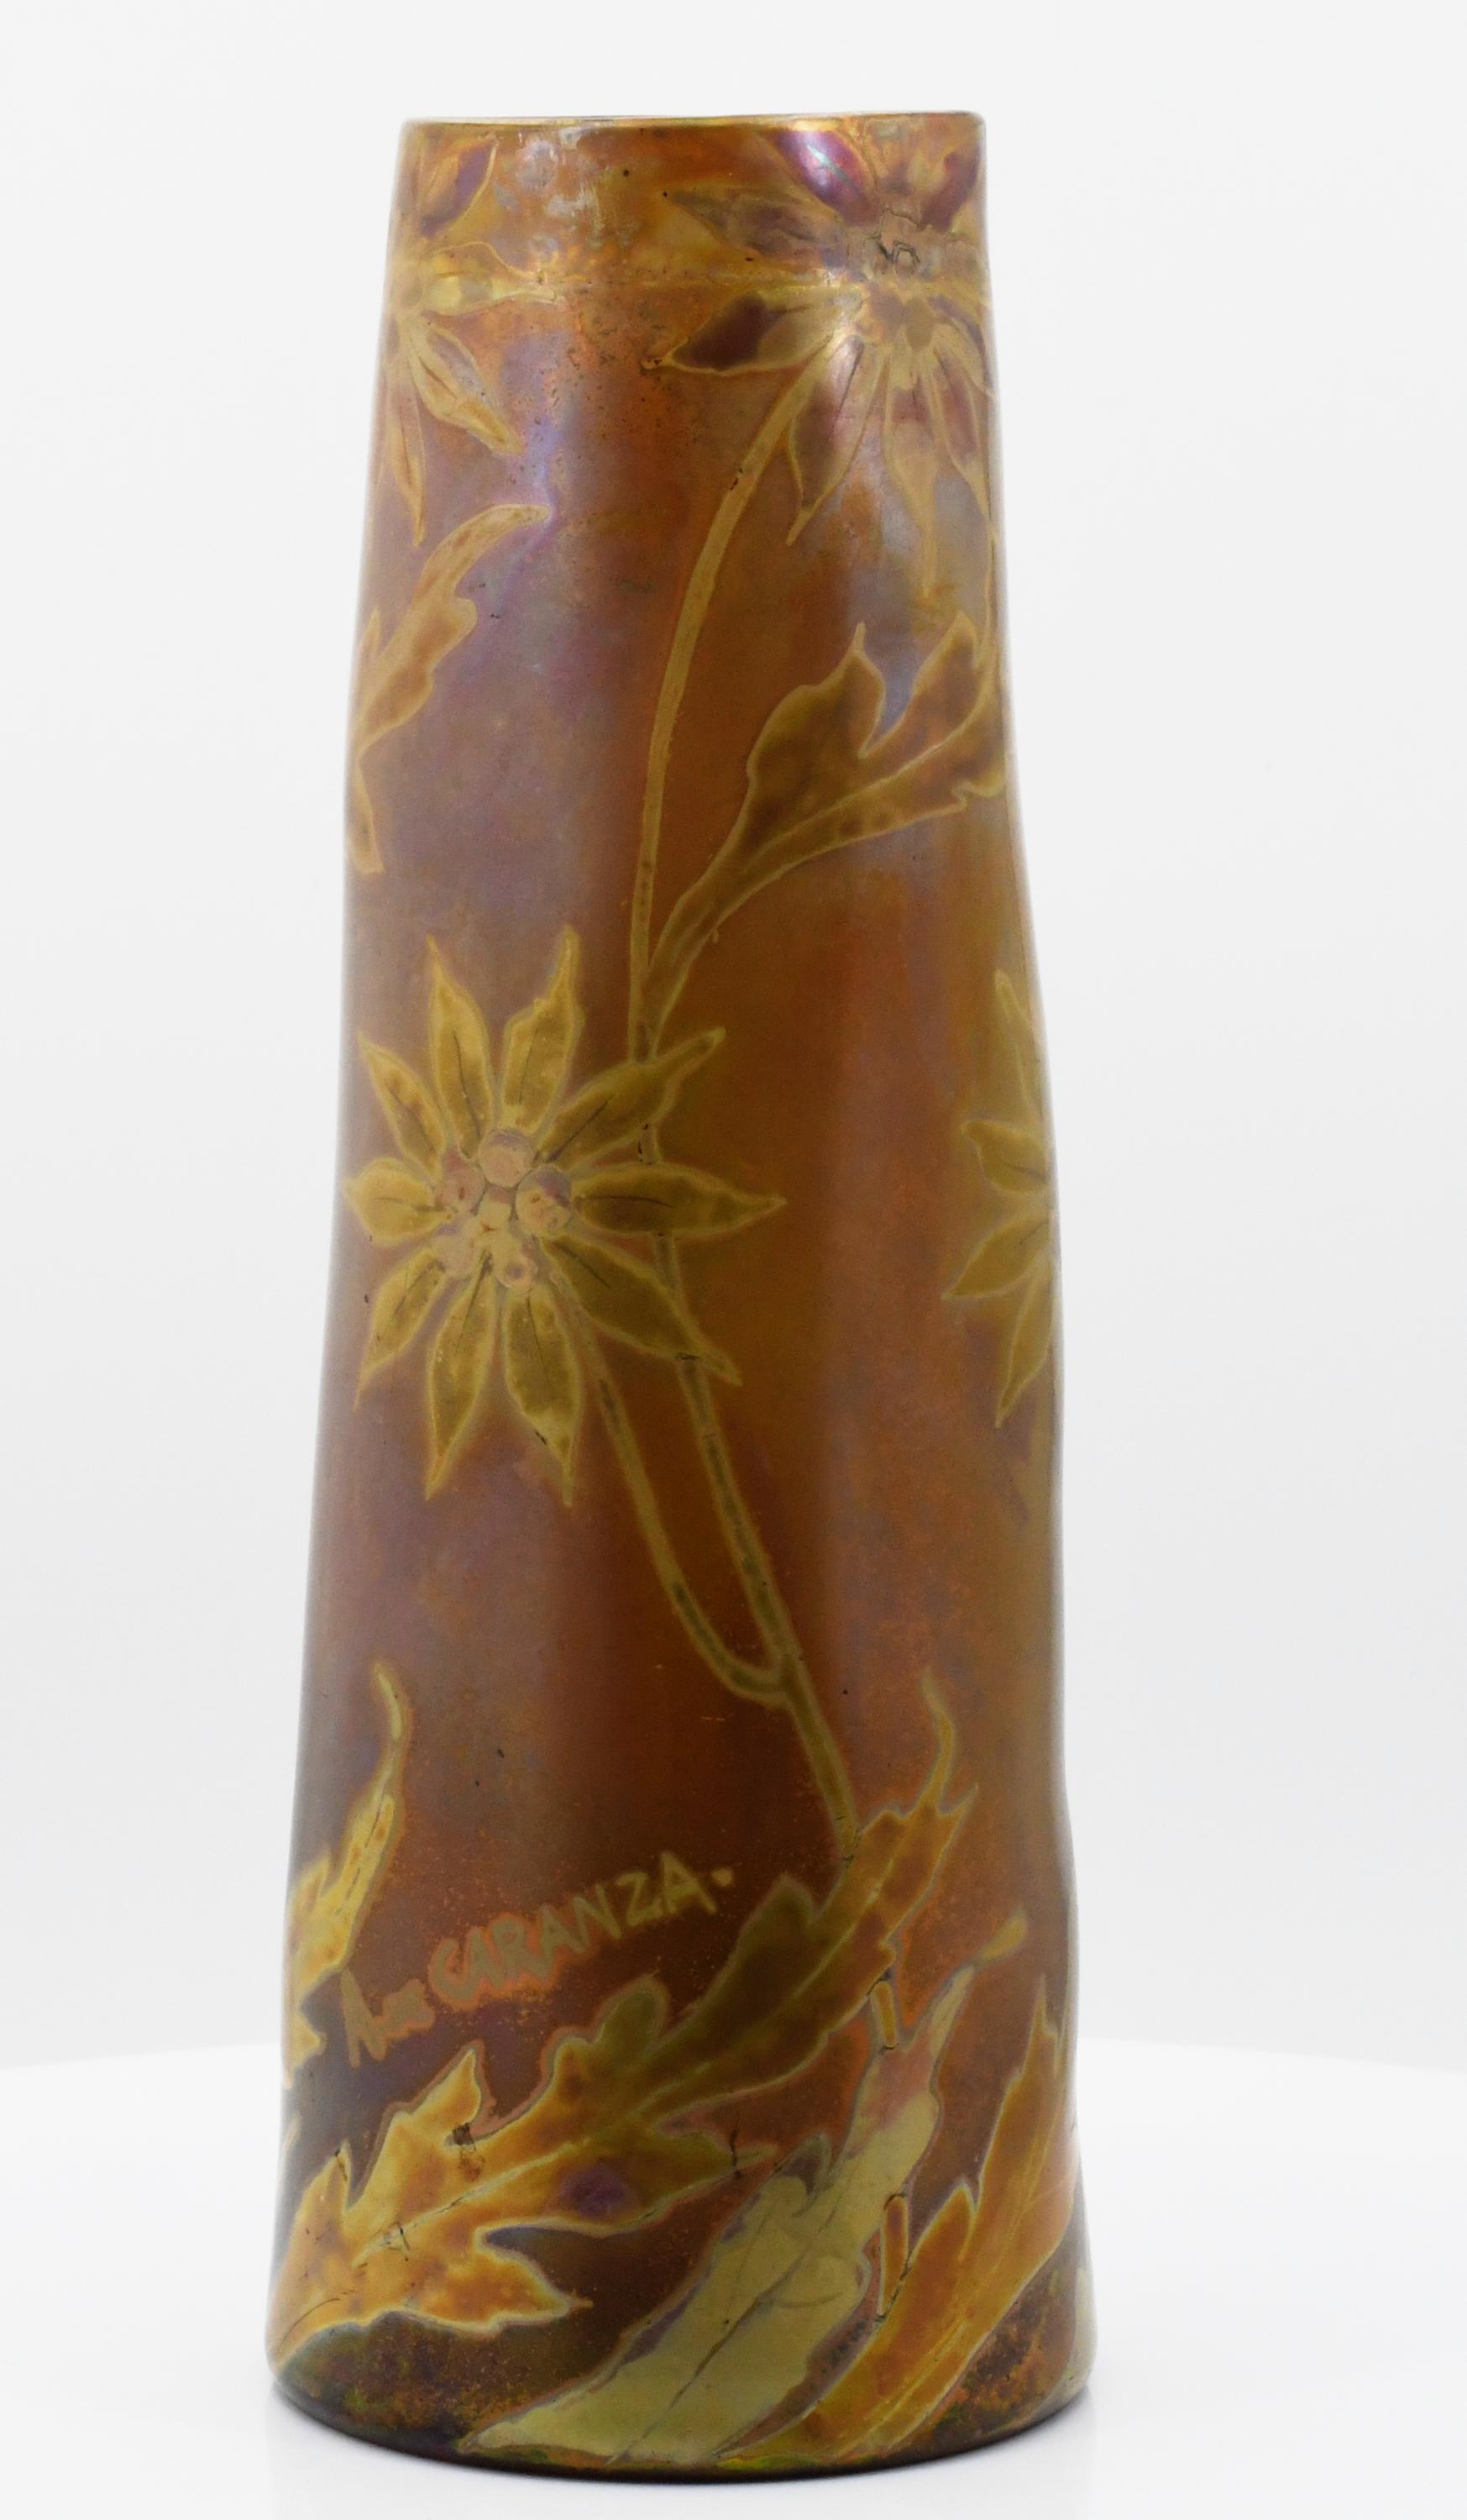 Amedee de Caranza - Vase mit Sterndolden, 68102-1, Van Ham Kunstauktionen